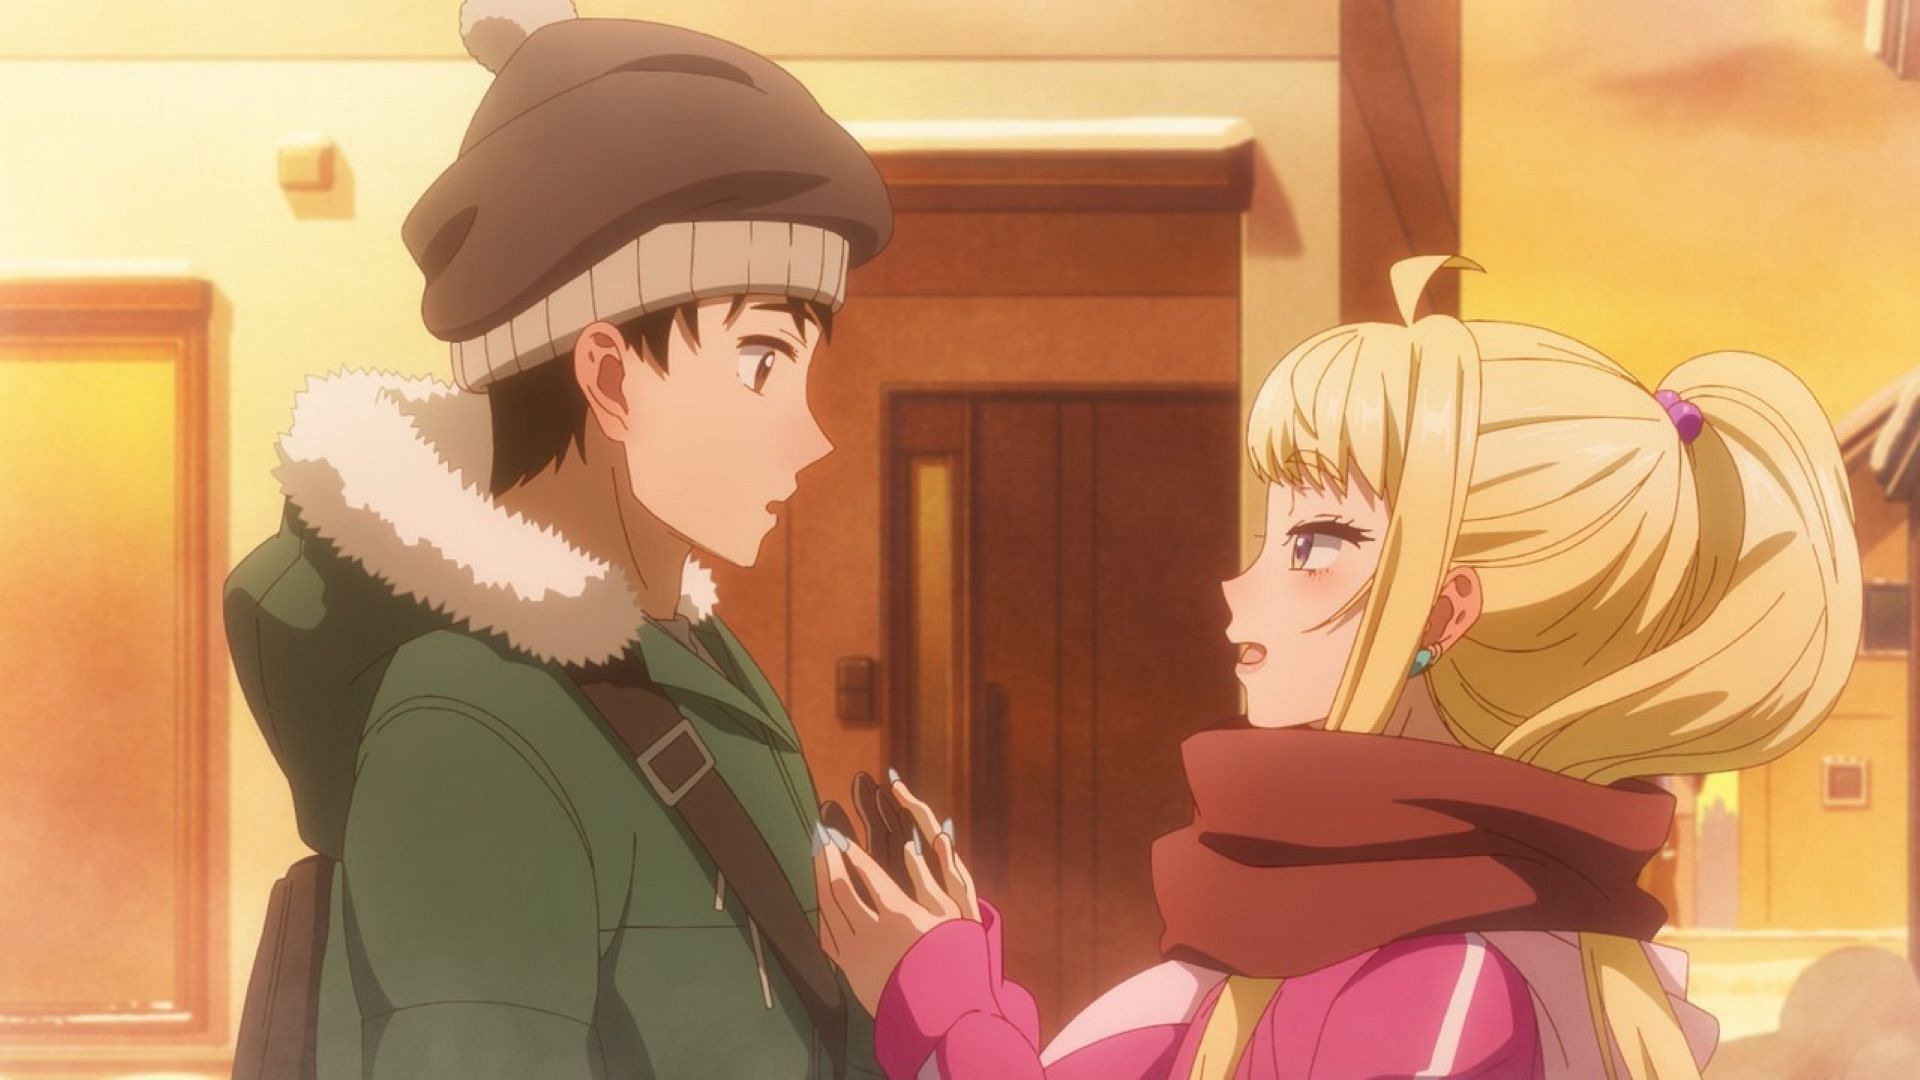 Tsubasa gives Minami his scarf (Image via Silver Link and Blade)